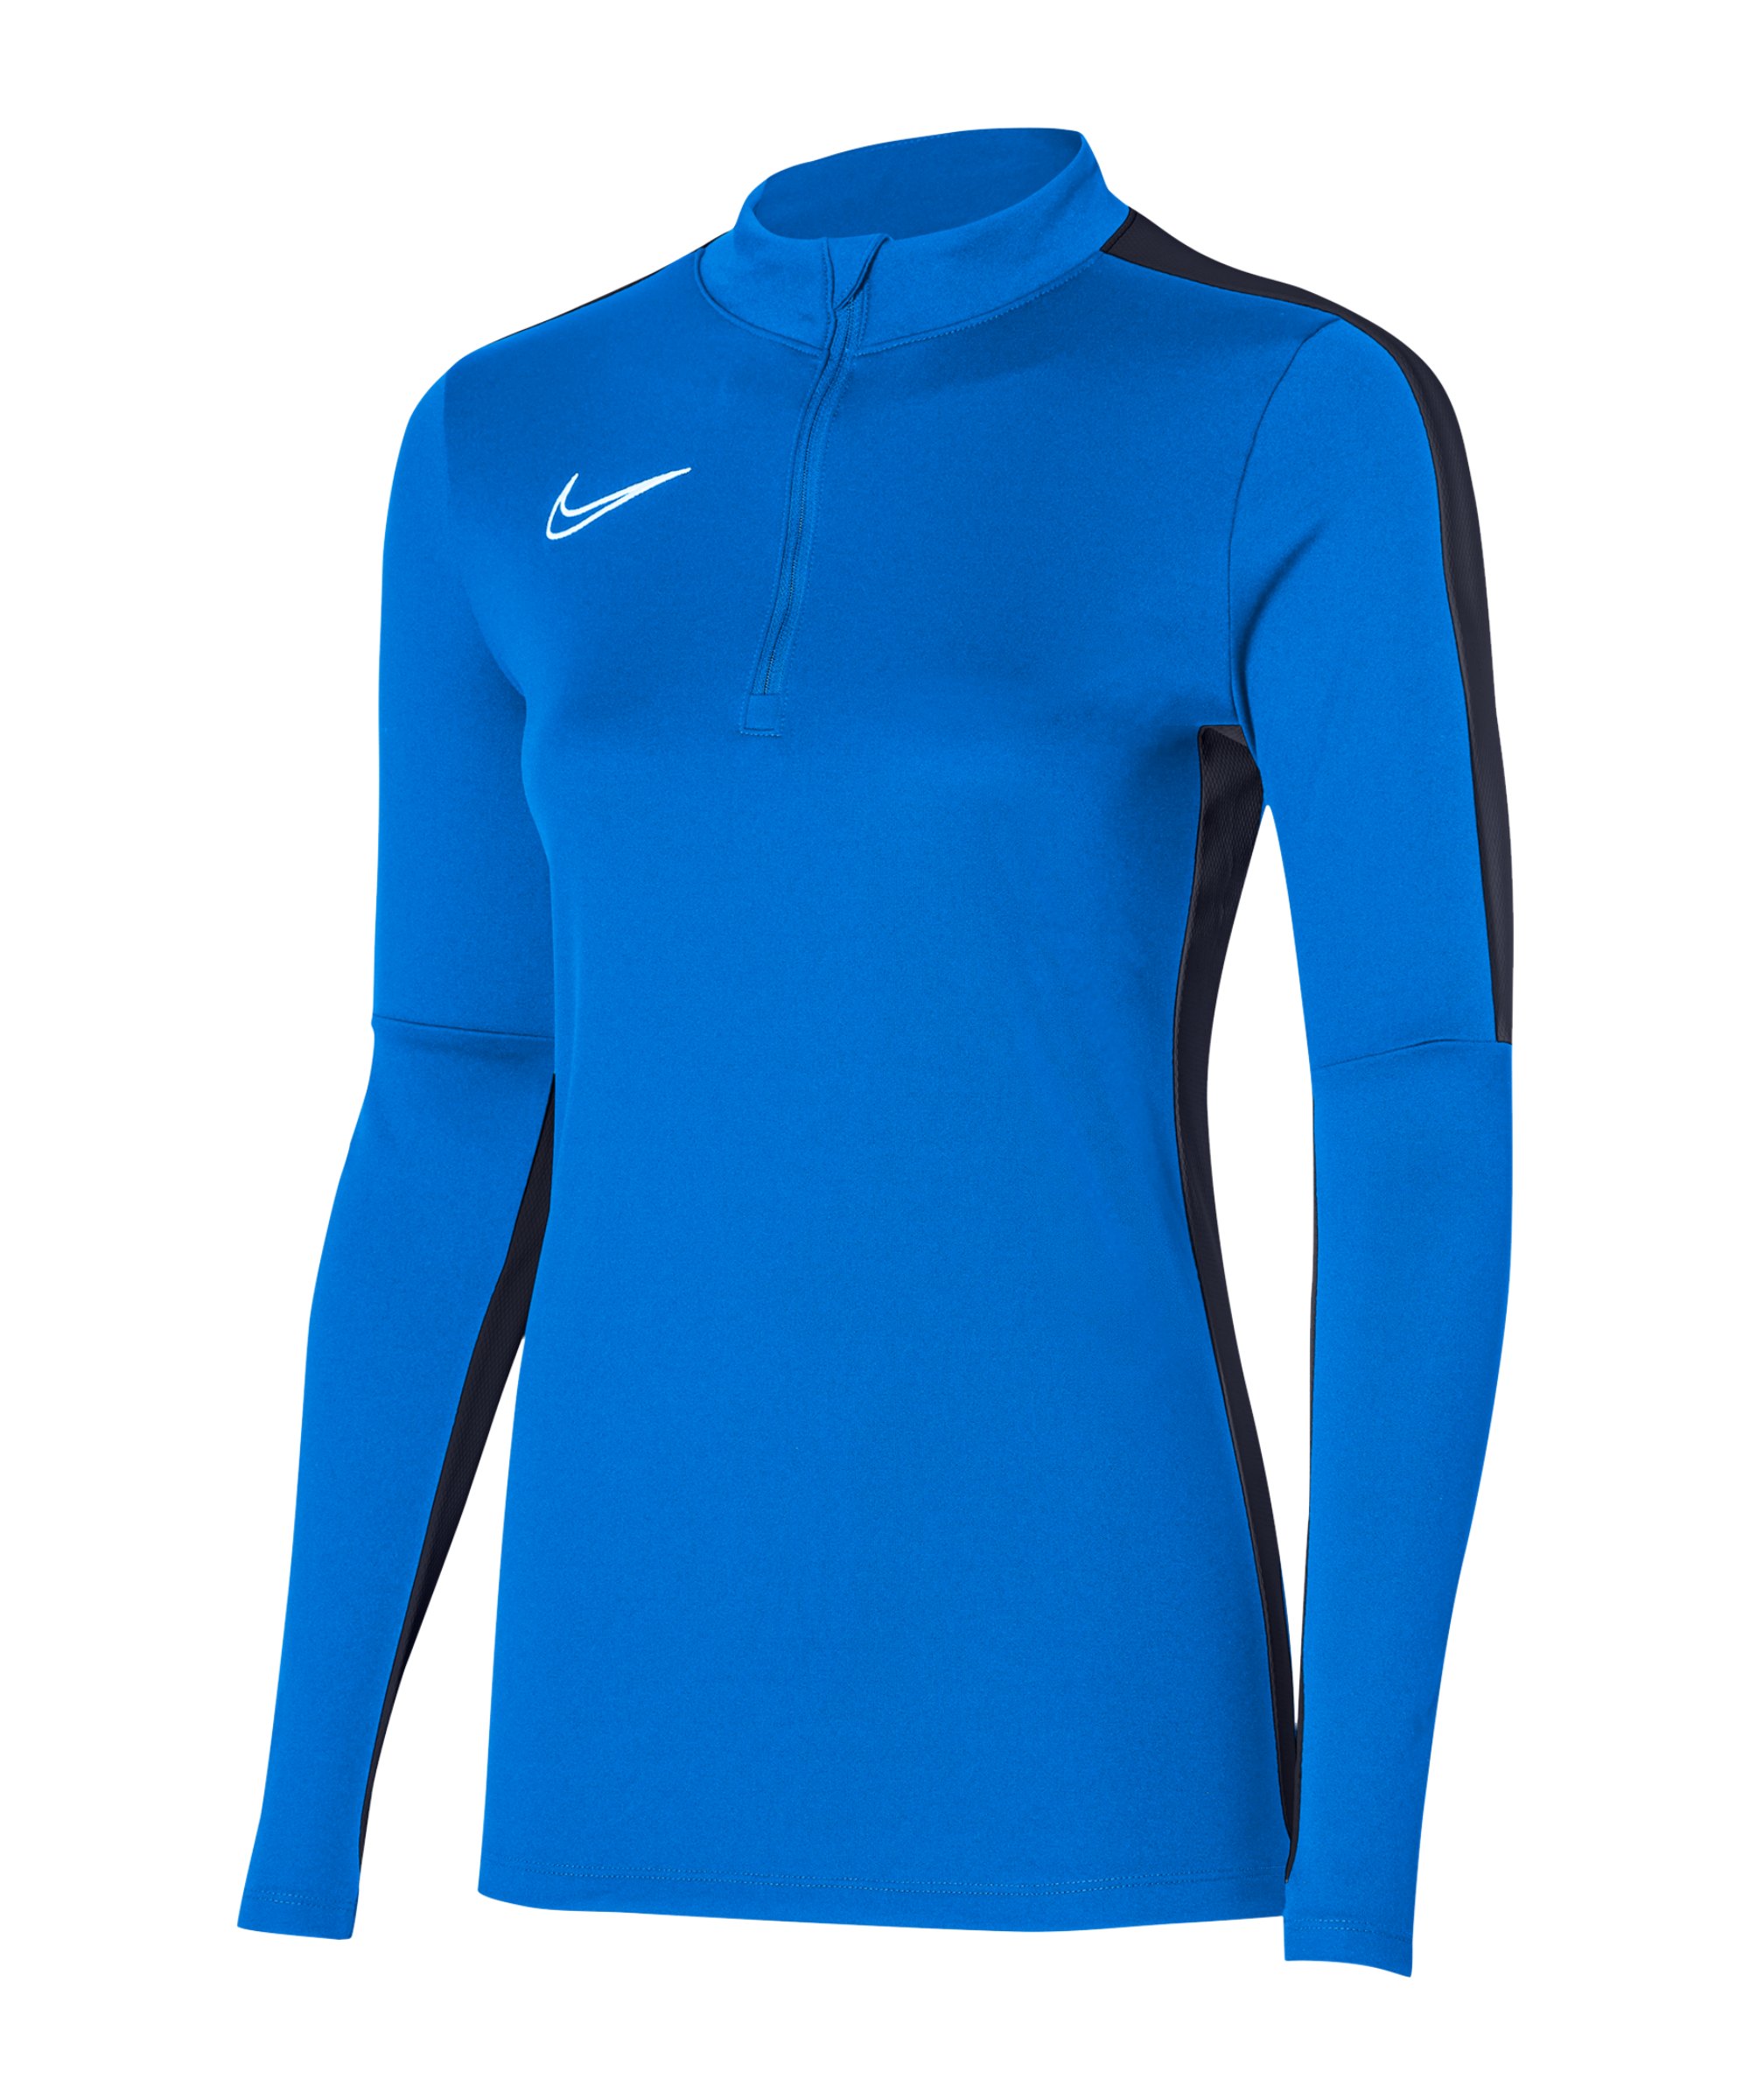 Nike Academy Drill Top Damen Blau F463 - dunkelblau